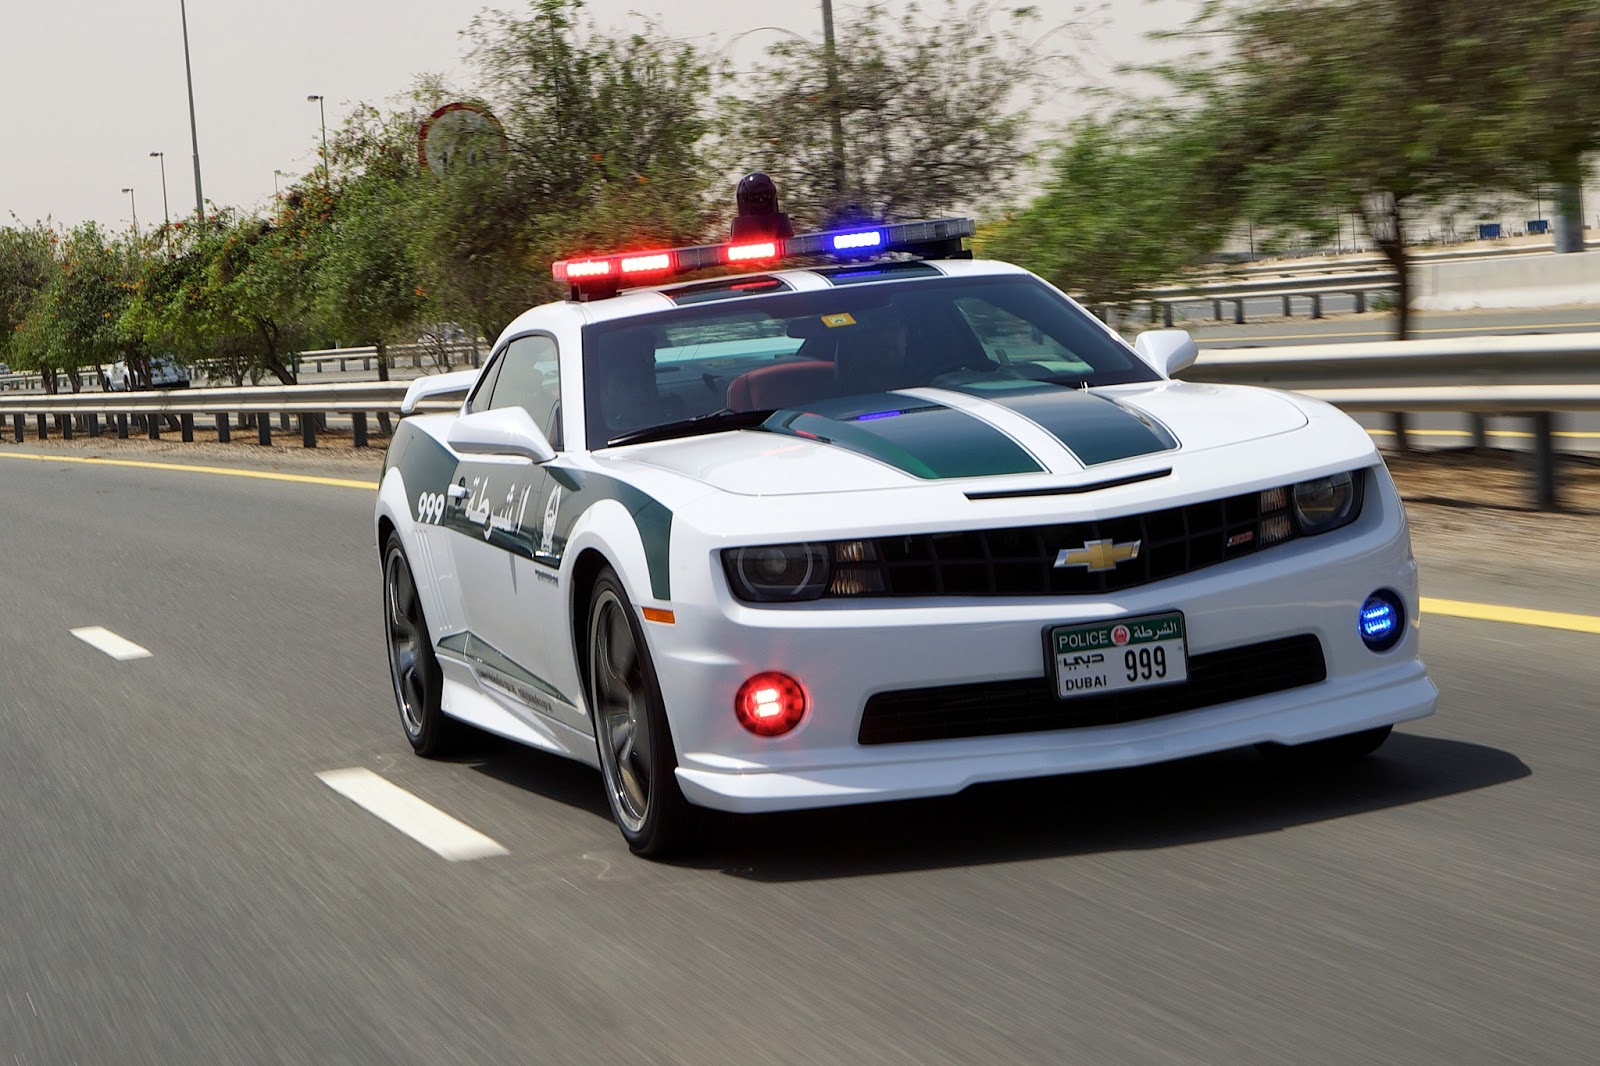 chevrolet - 2008 - [Chevrolet] Camaro V - Page 14 Chevrolet+Camaro+SS+Dubai+Police+Car